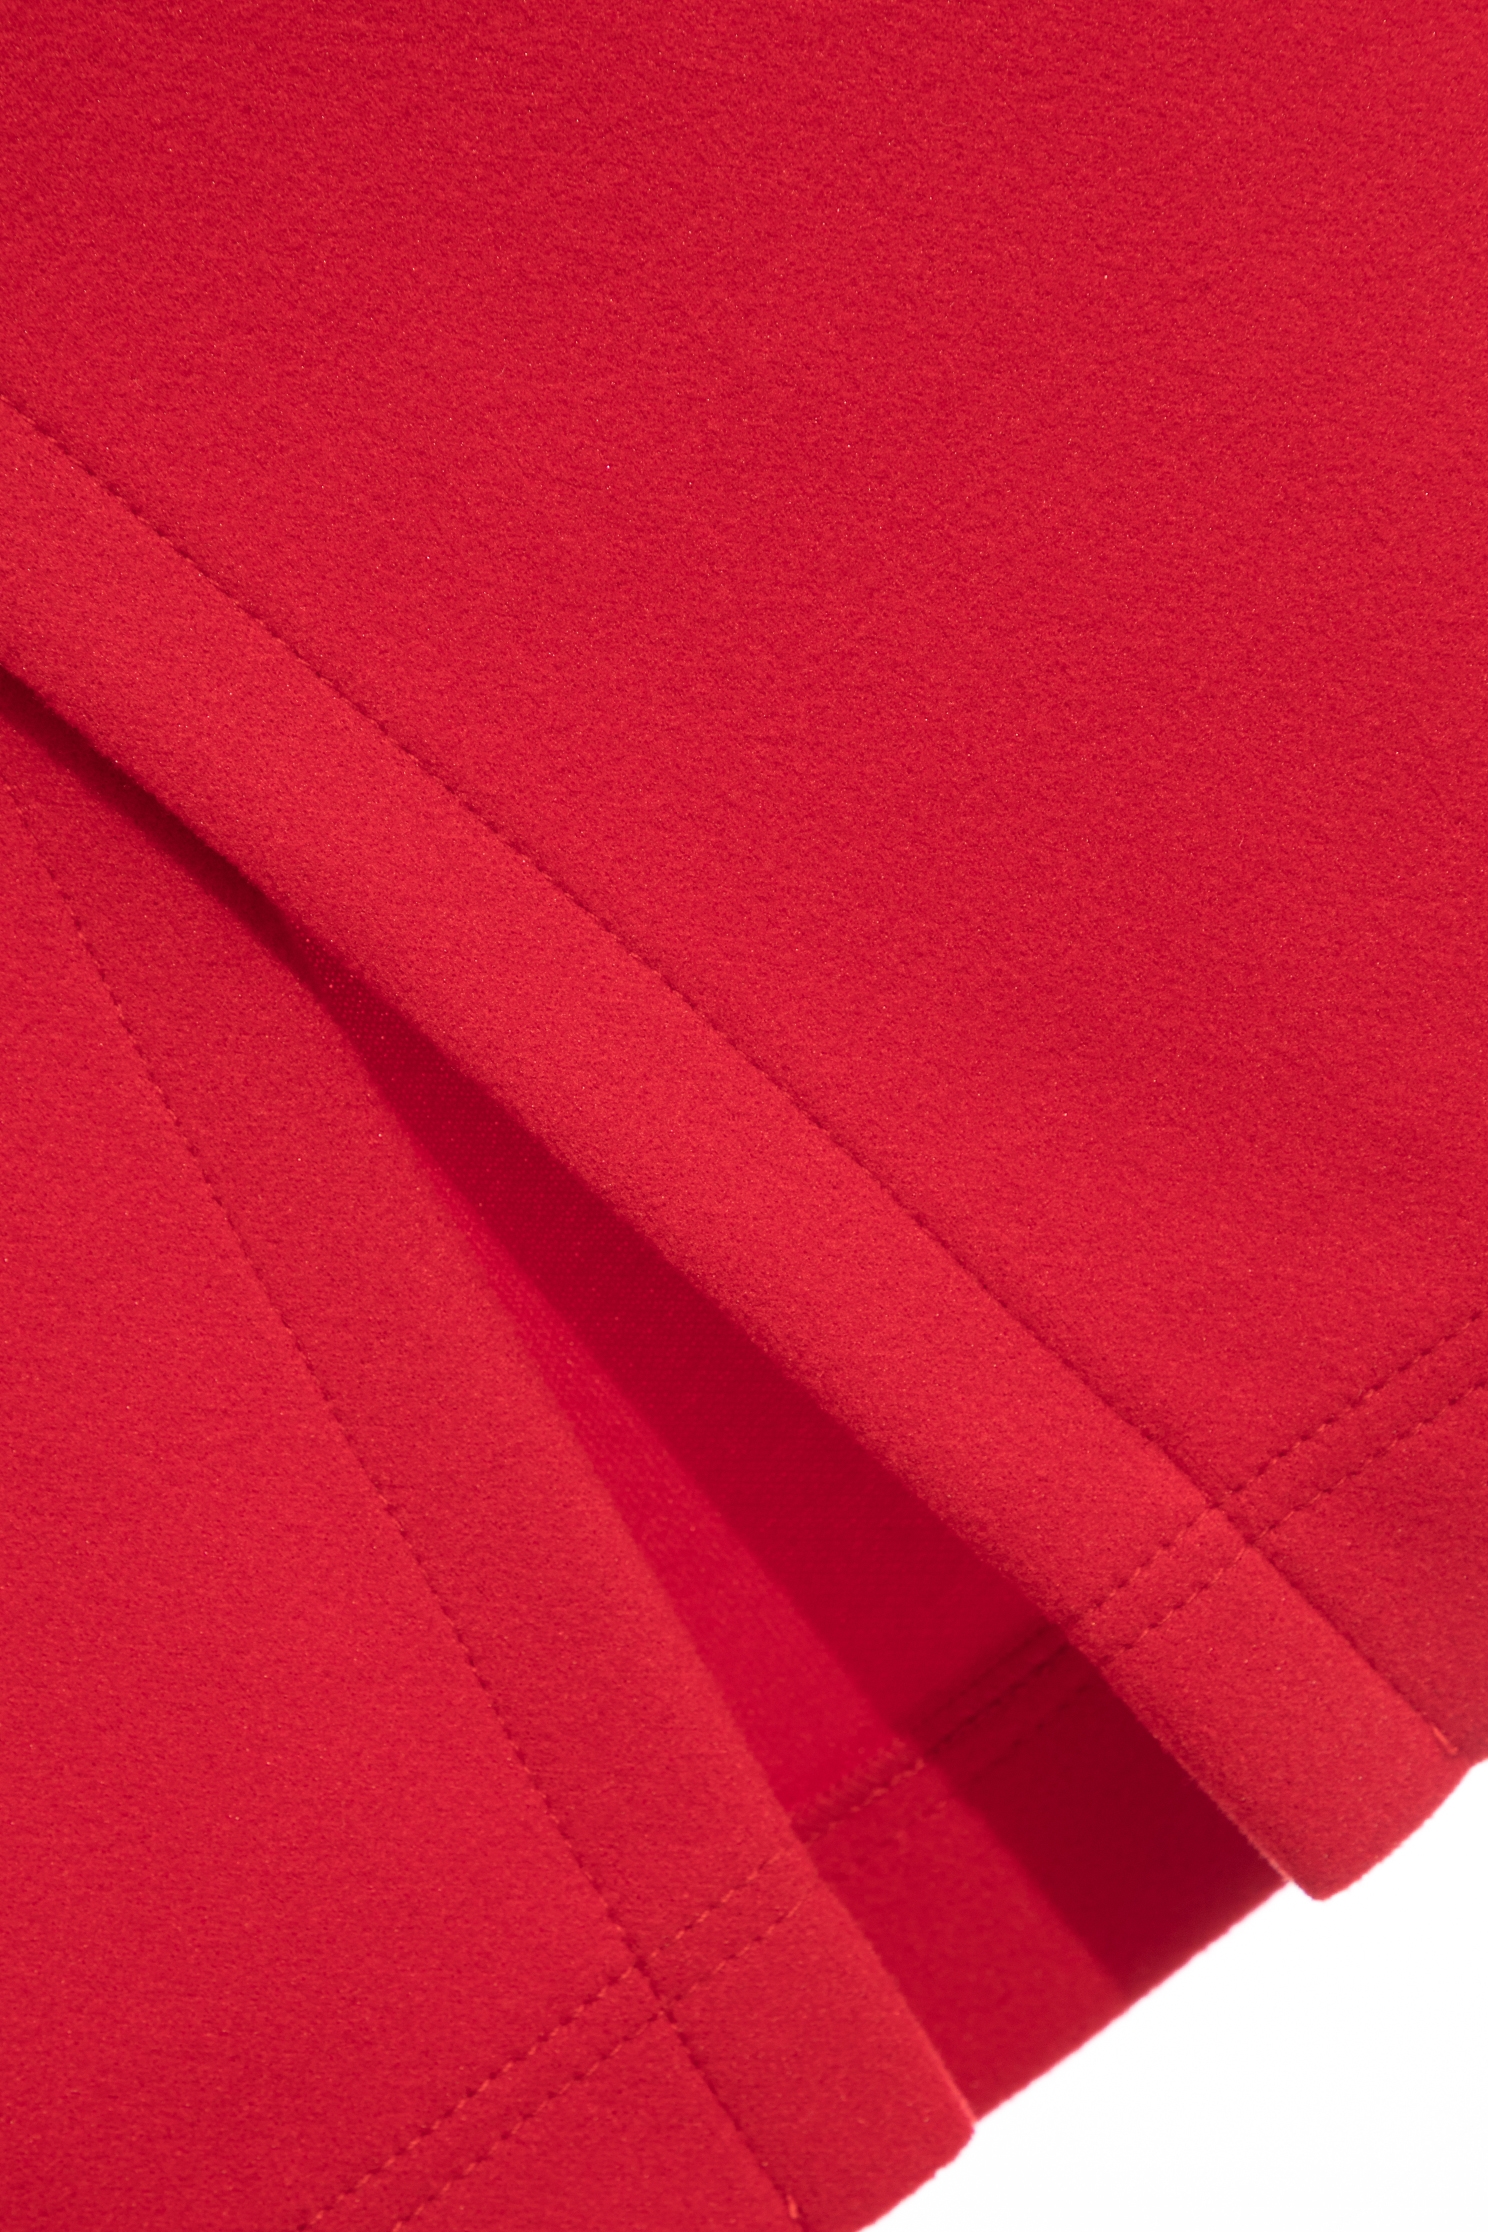 魅惑紅變化交叉彈性裙魅惑紅變化交叉彈性裙,時髦選品專區,秋冬穿搭,窄裙,針織,開運紅